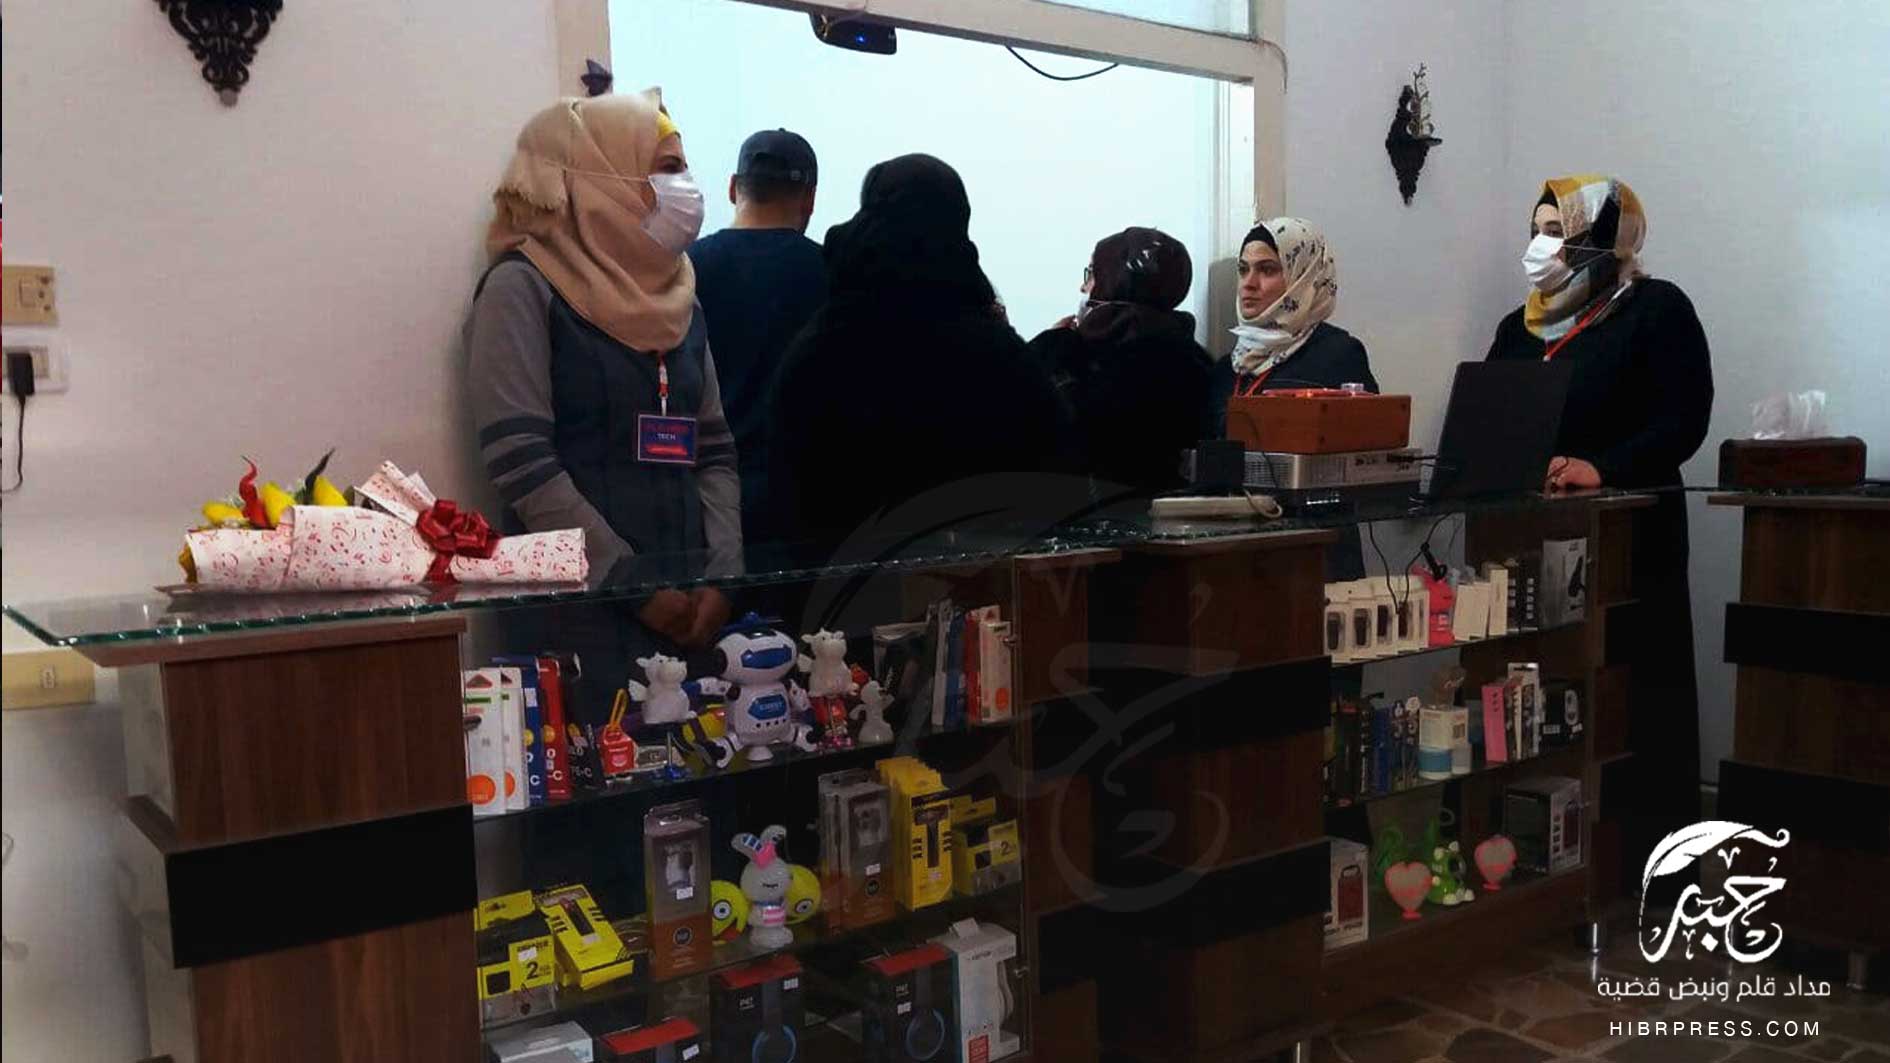 افتتحت منظمة بارقة أمل النسائية مركز  (FLOWER-TECH)   لصيانة الموبايل والتسويق الالكتروني في مدينة إدلب.